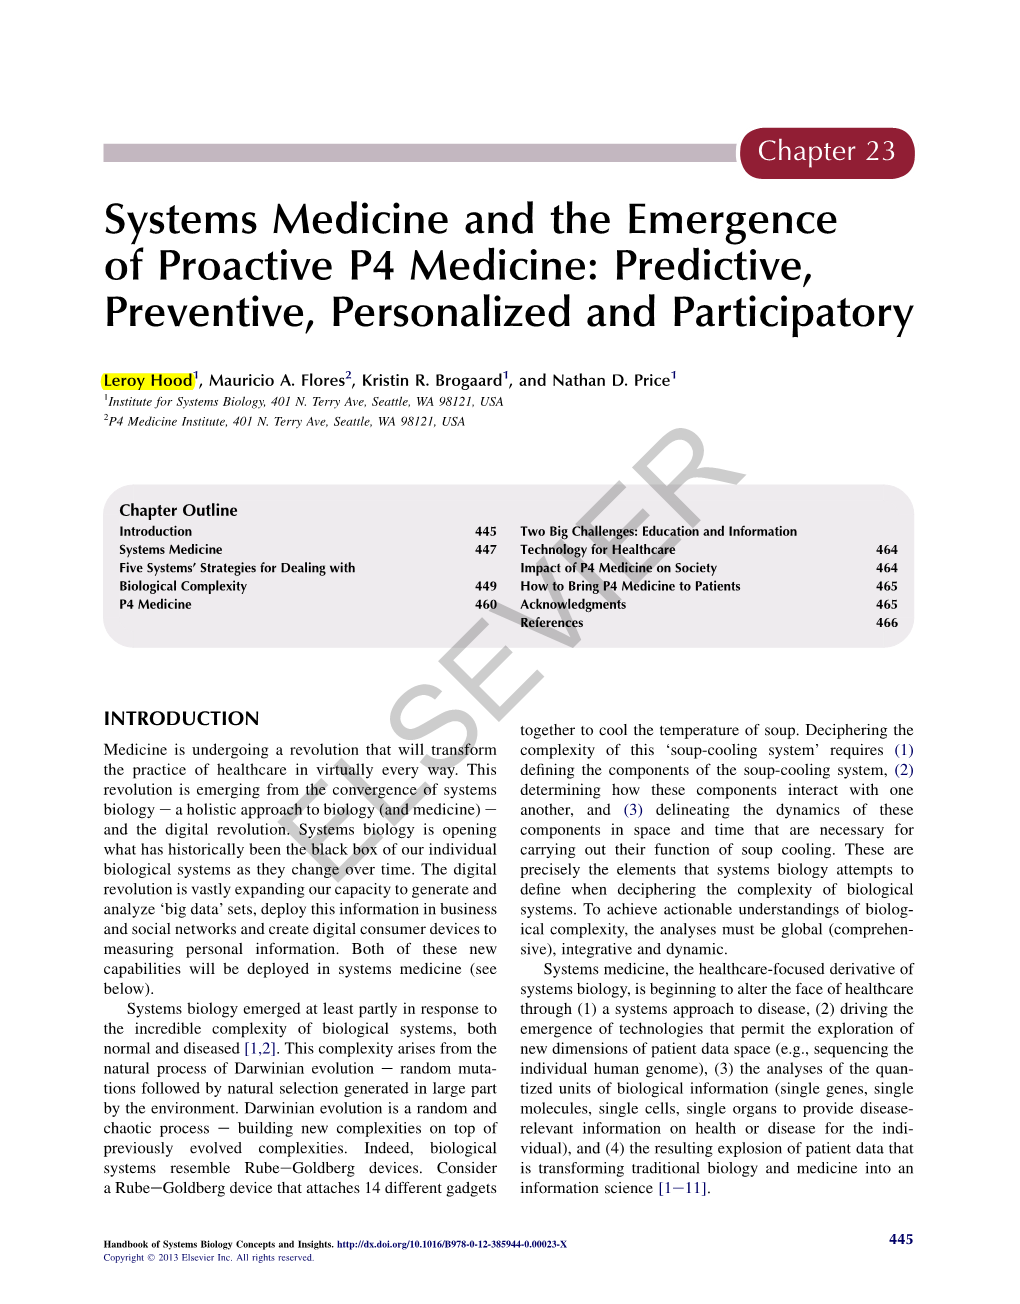 Proactive P4 Medicine: Predictive, Preventive, Personalized and Participatory